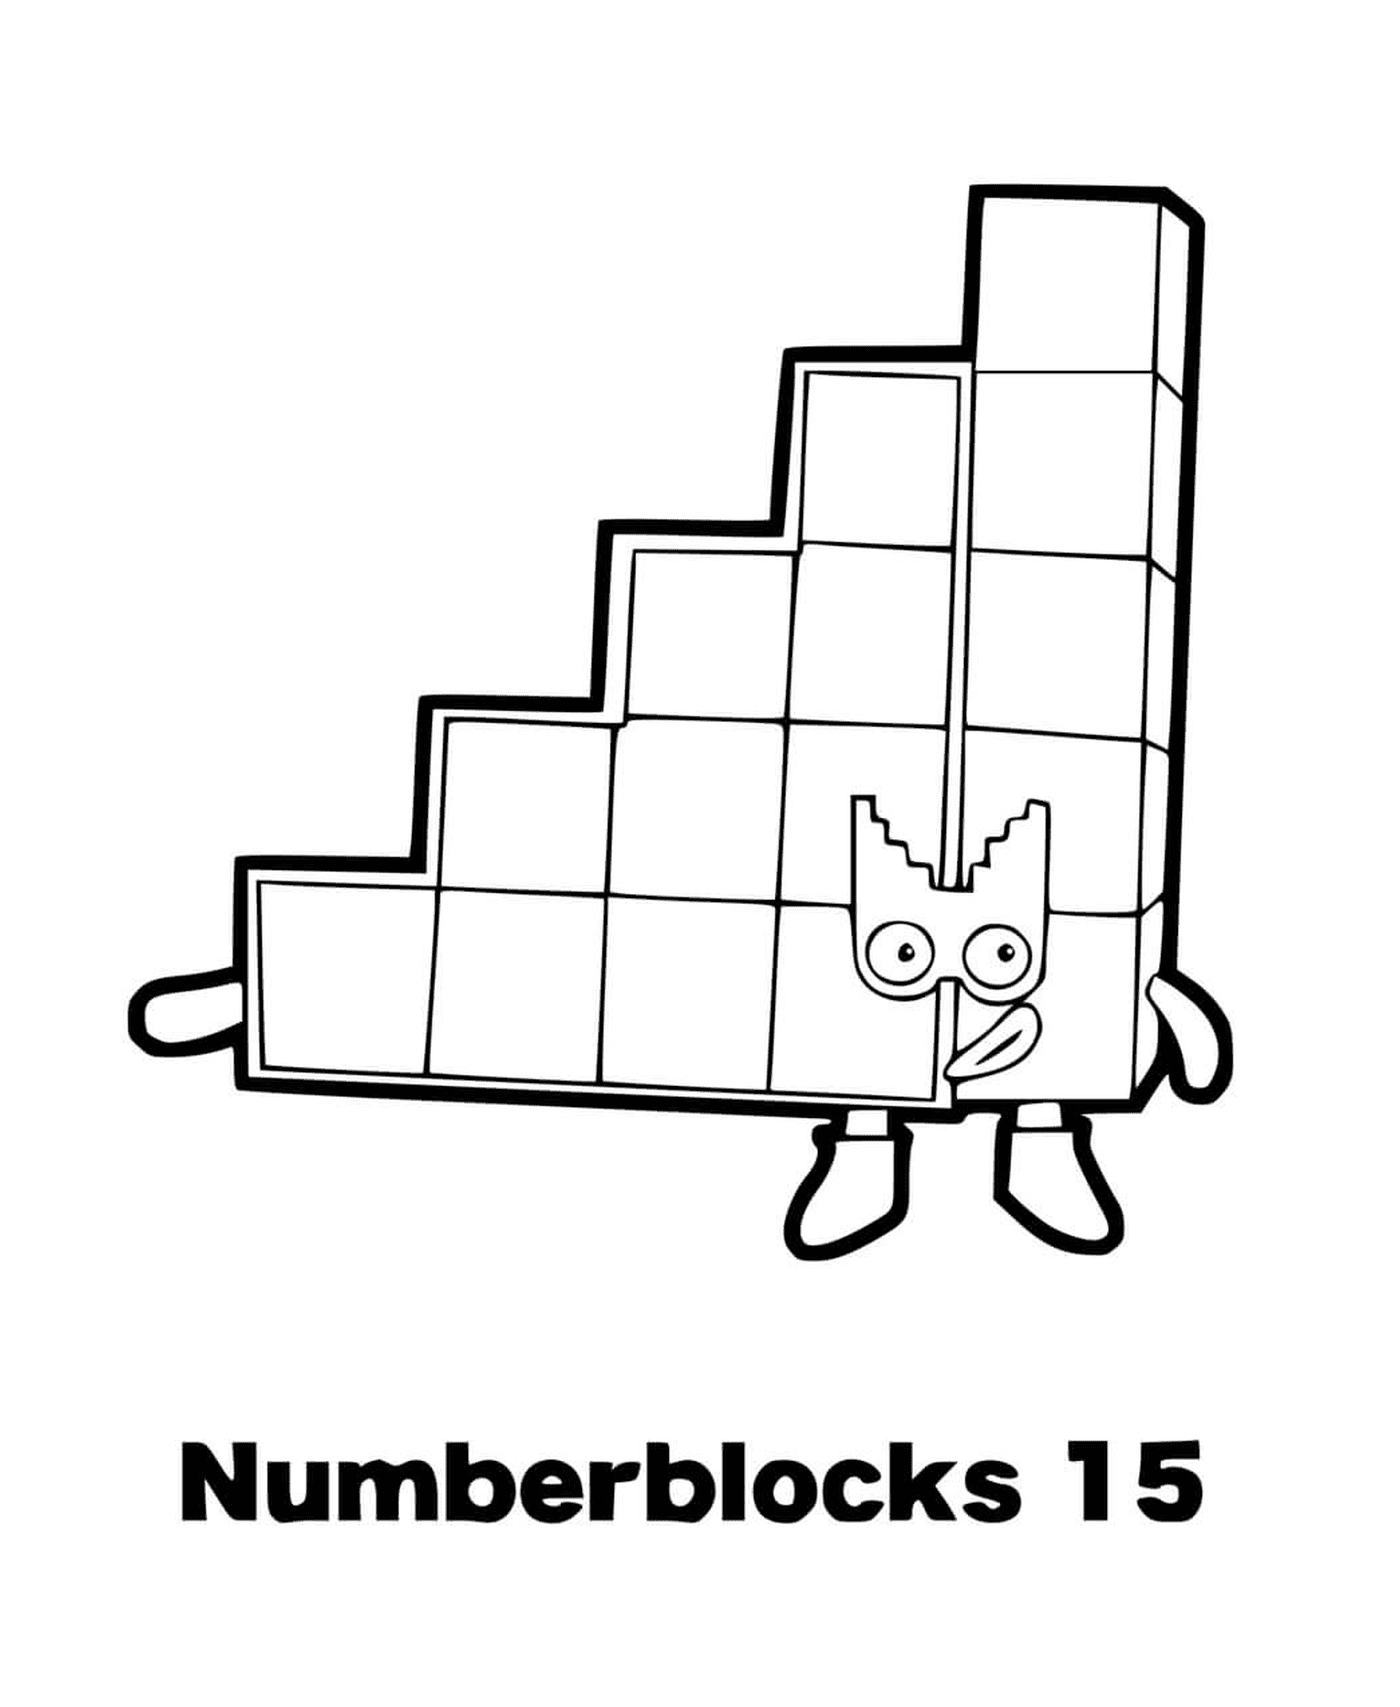  Numero di blocchi numero 15, carattere animato 